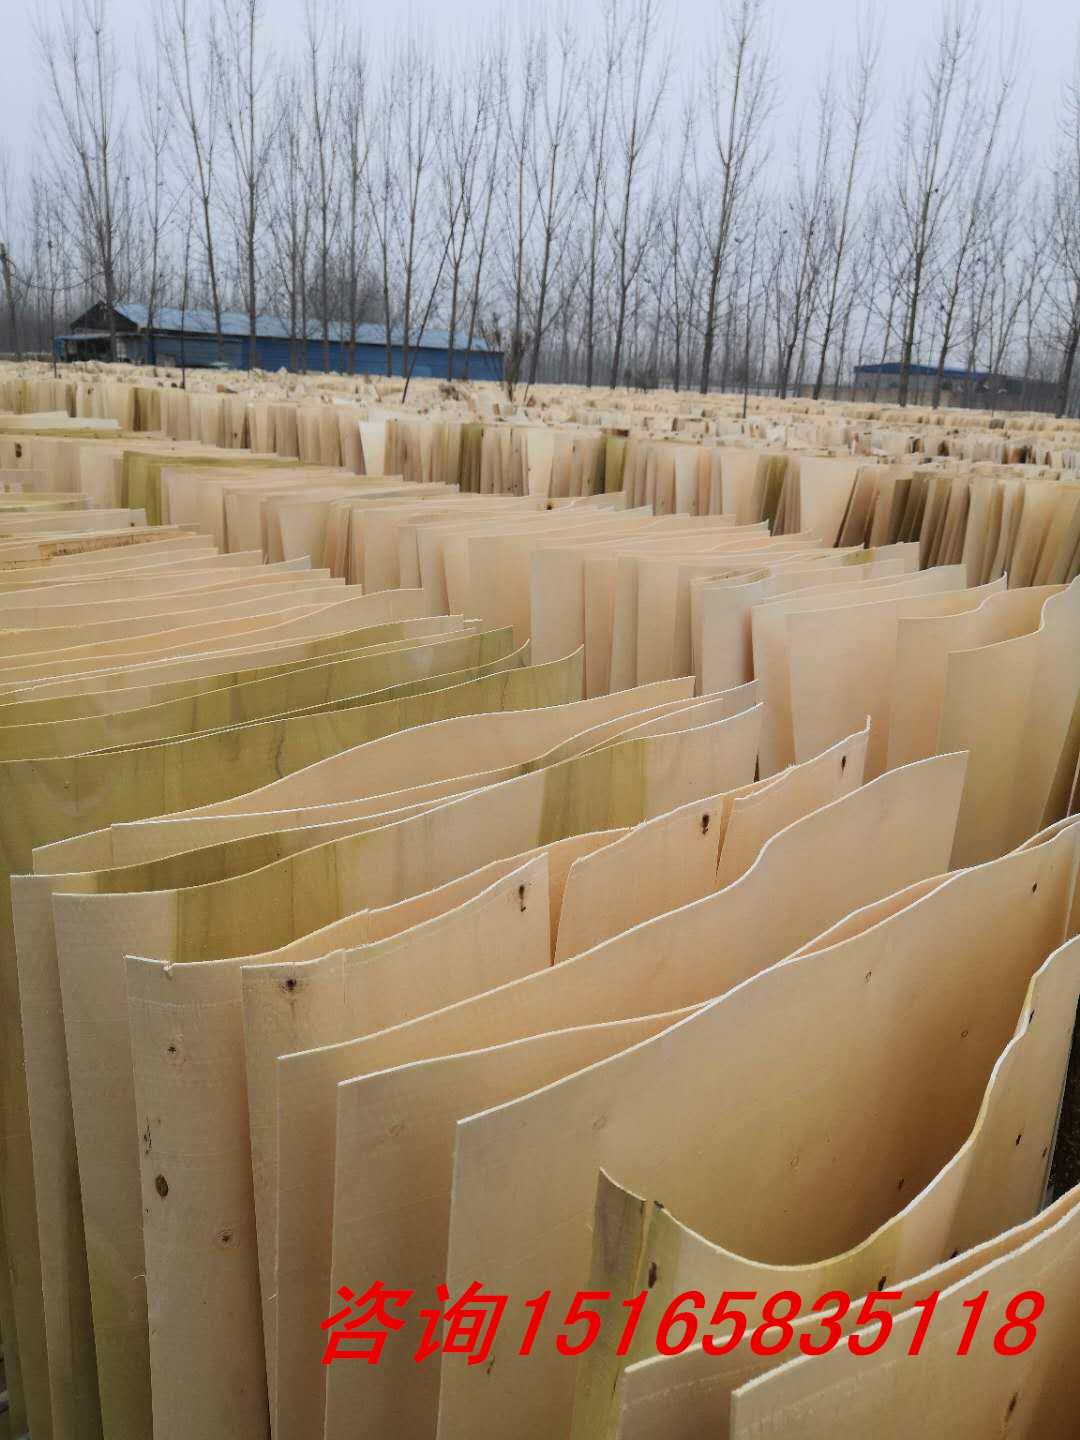 天津北京卖胶合板天津多层板价格天津建筑模板质量好